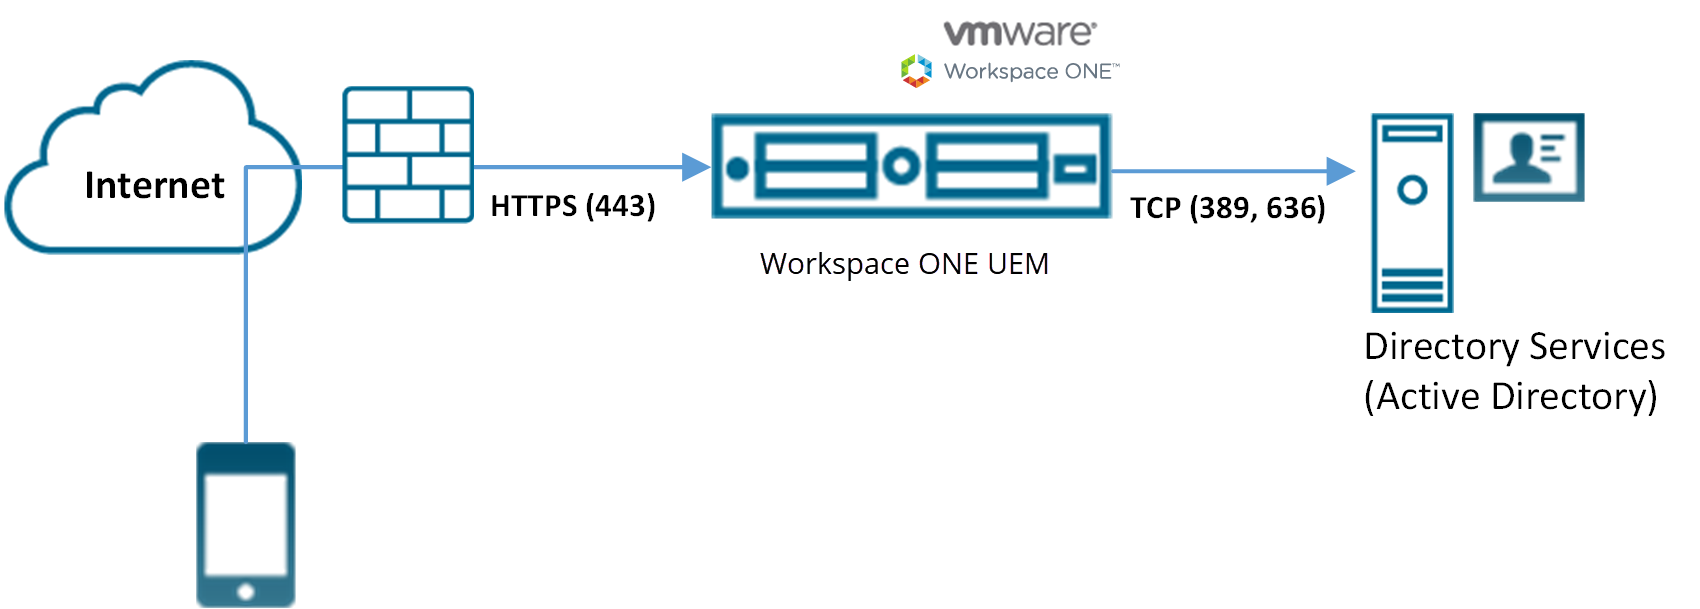 この図は、ファイアウォールを通過するインターネット経由で UEM Console にアクセスするデバイスを示しています。UEM Console はディレクトリ サービスにアクセスします。